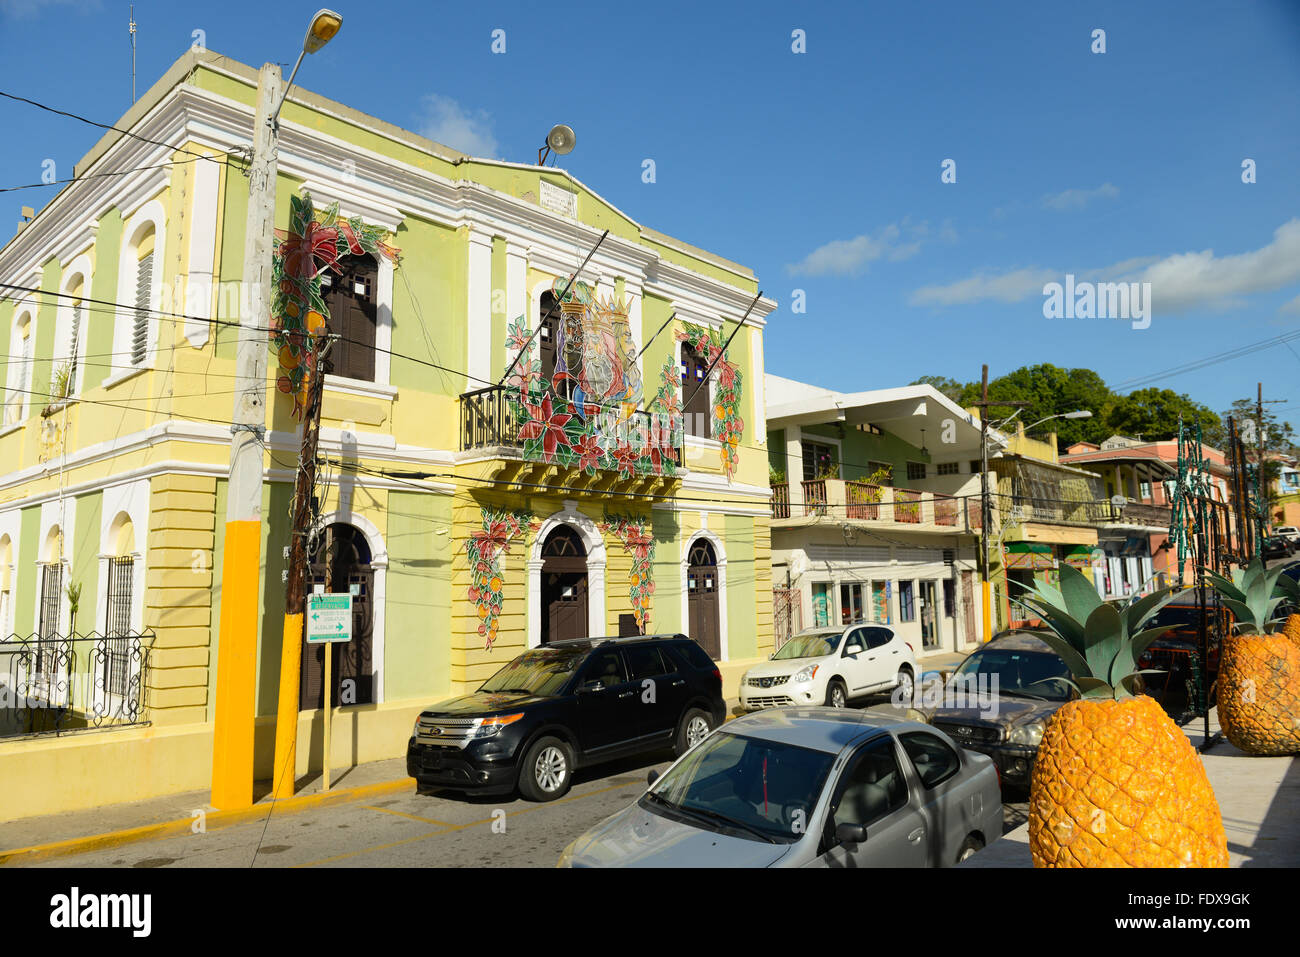 L'Hôtel de Ville de Lajas Décorées pour Noël. Lajas est connue pour ses nombreuses plantations d'ananas. Lajas, Puerto Rico. L'île des Caraïbes Banque D'Images